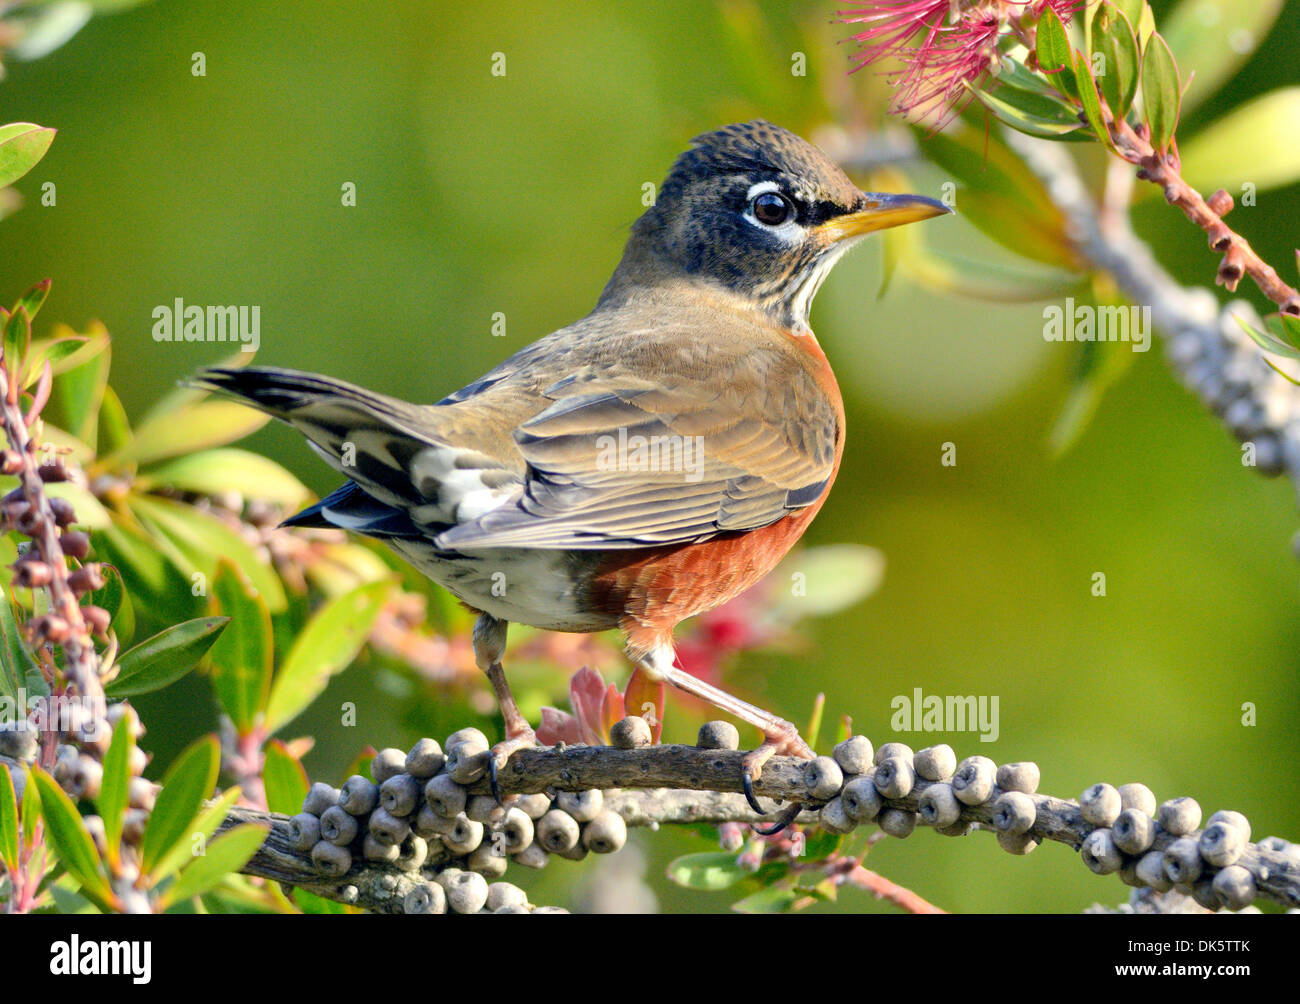 Un oiseau-Robin américain- Turdus migratorius, perché sur une branche, photographié sur un fond flou. Banque D'Images